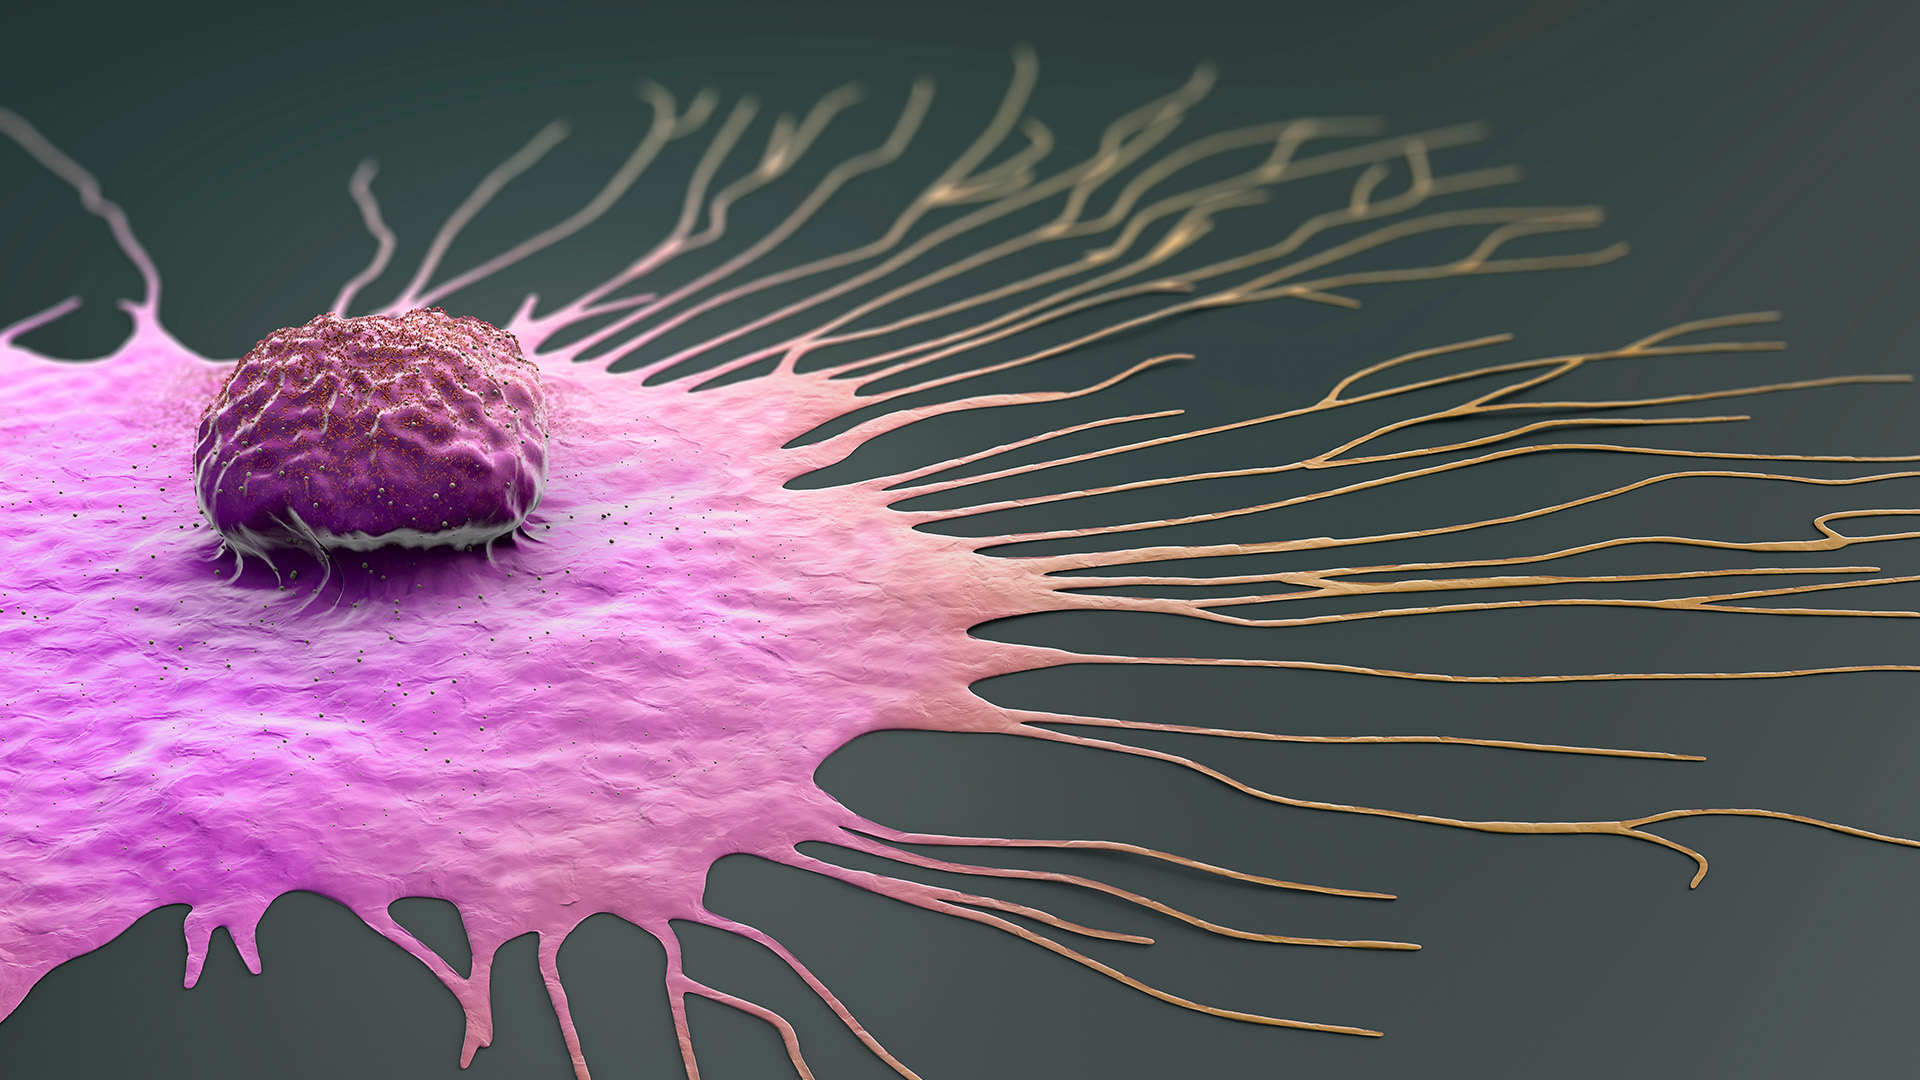 Montefiore Einstein Cancer Center Receives $10 Million Grant to Study Lung Metastasis in Breast Cancer